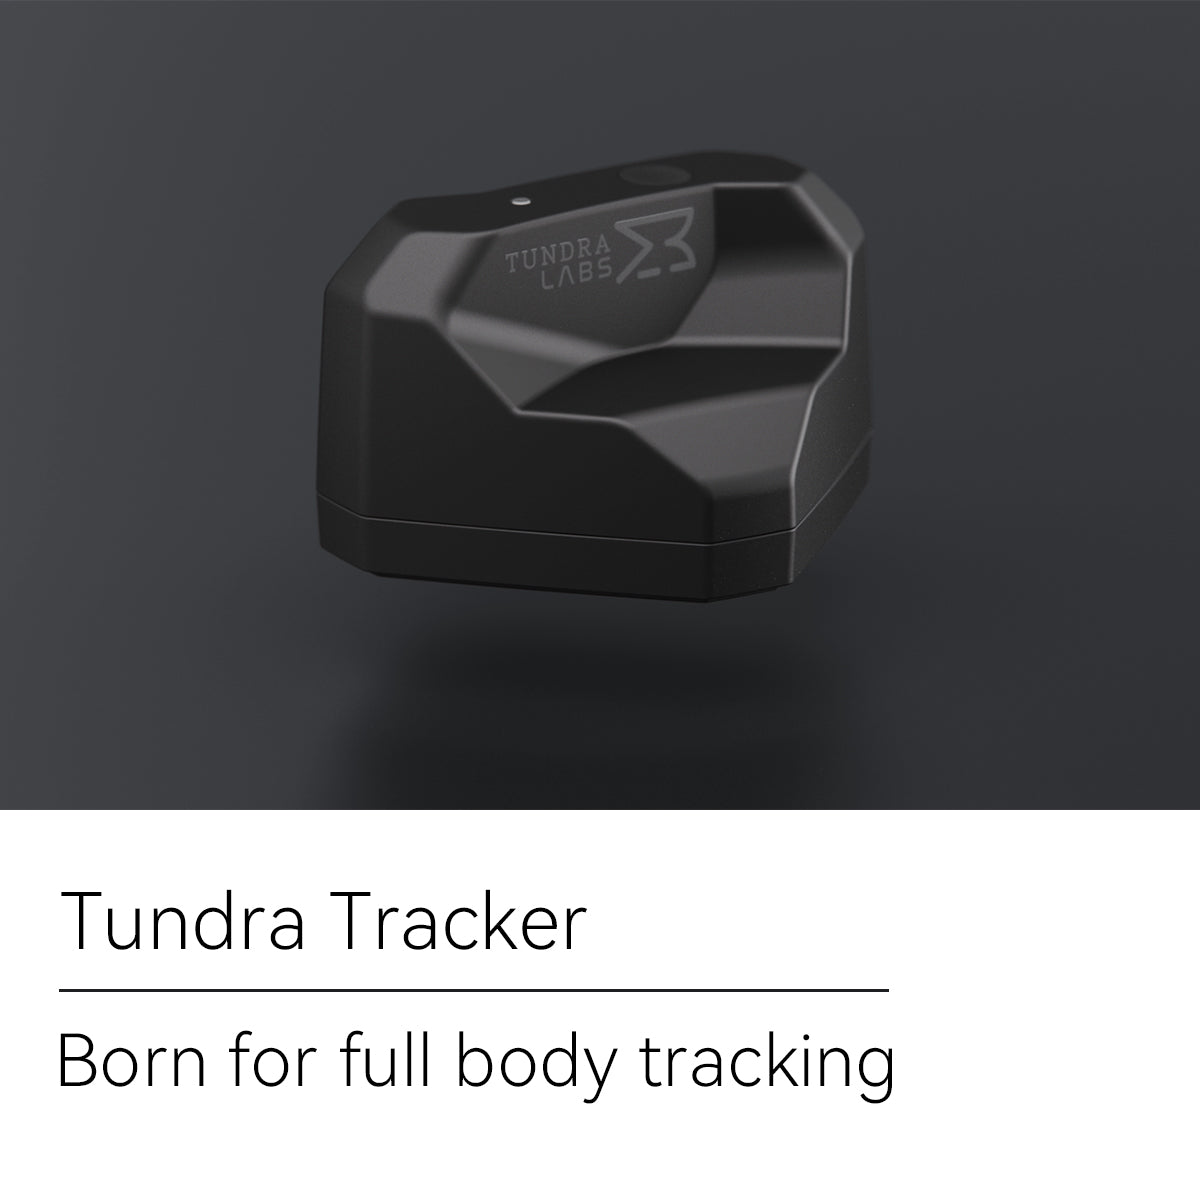 3. Tundra Tracker